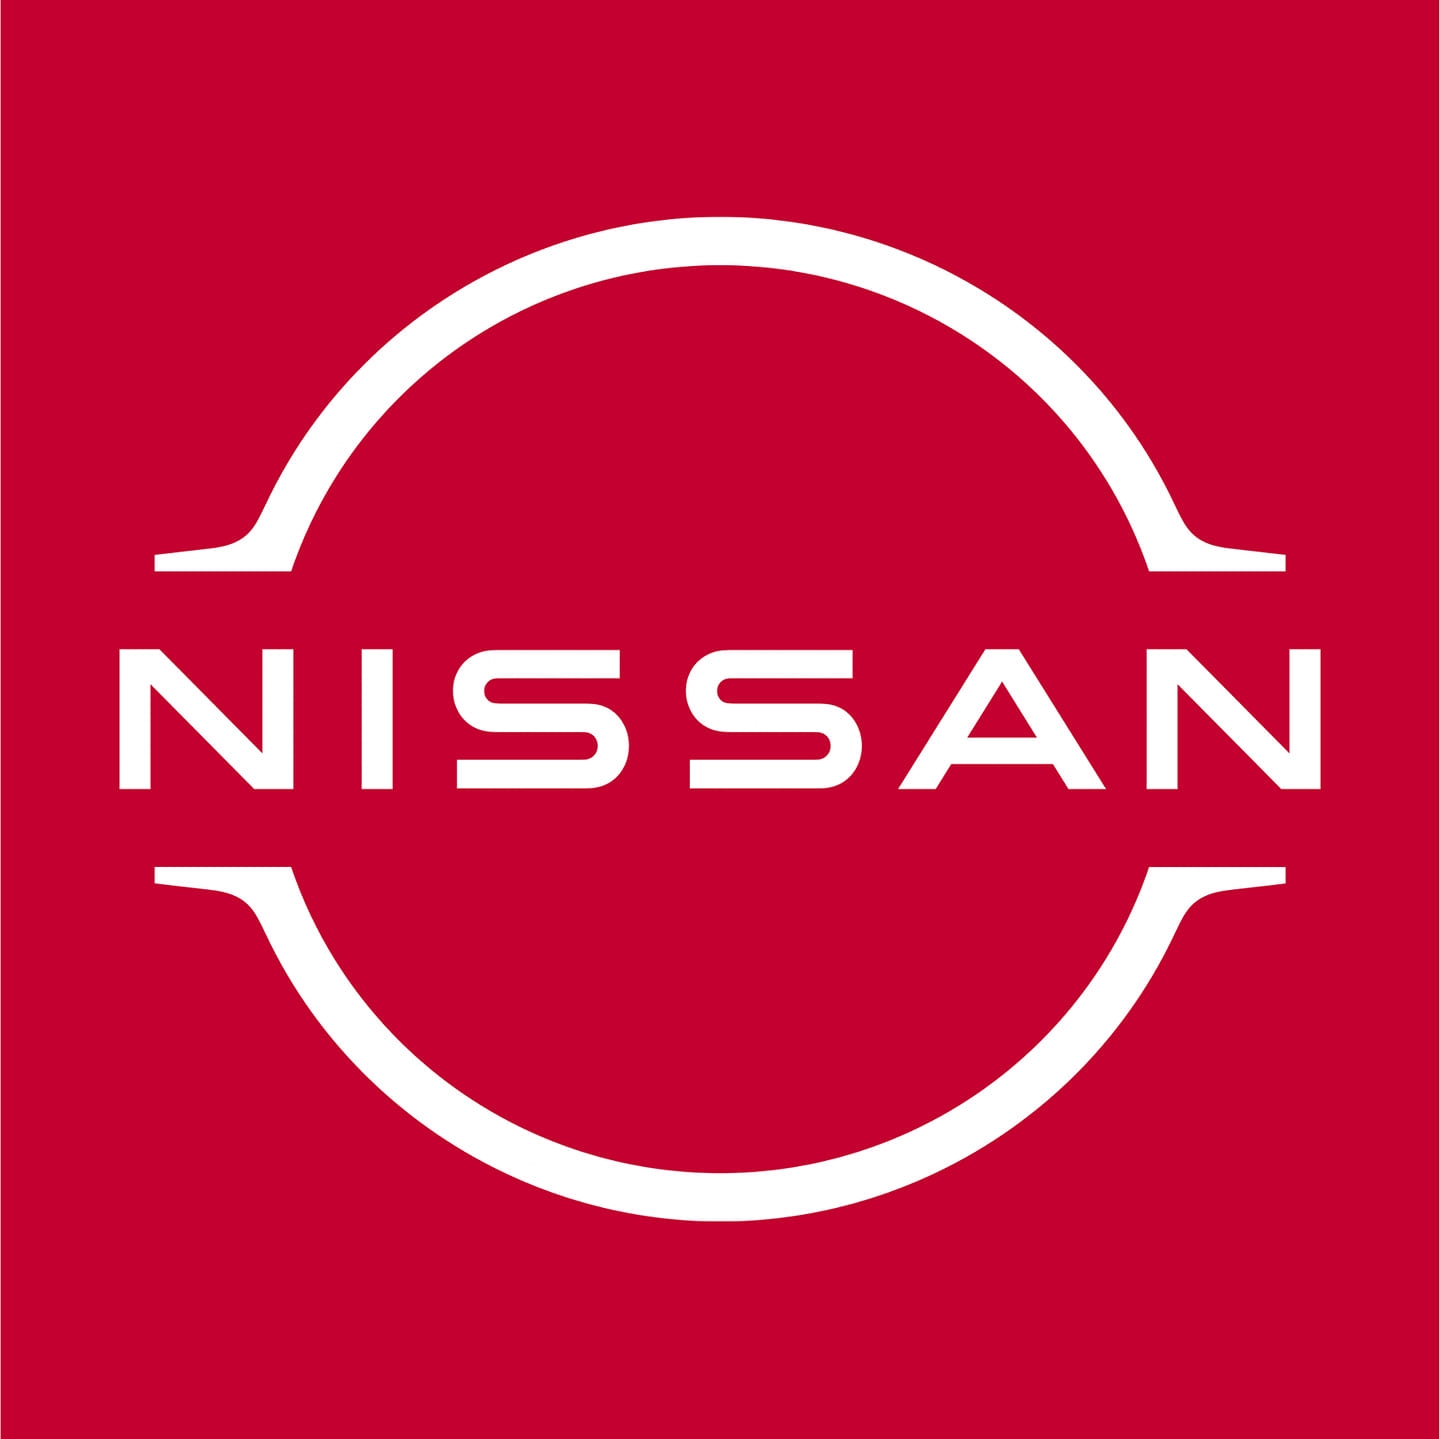 RC NISSAN|Show Room|Automotive